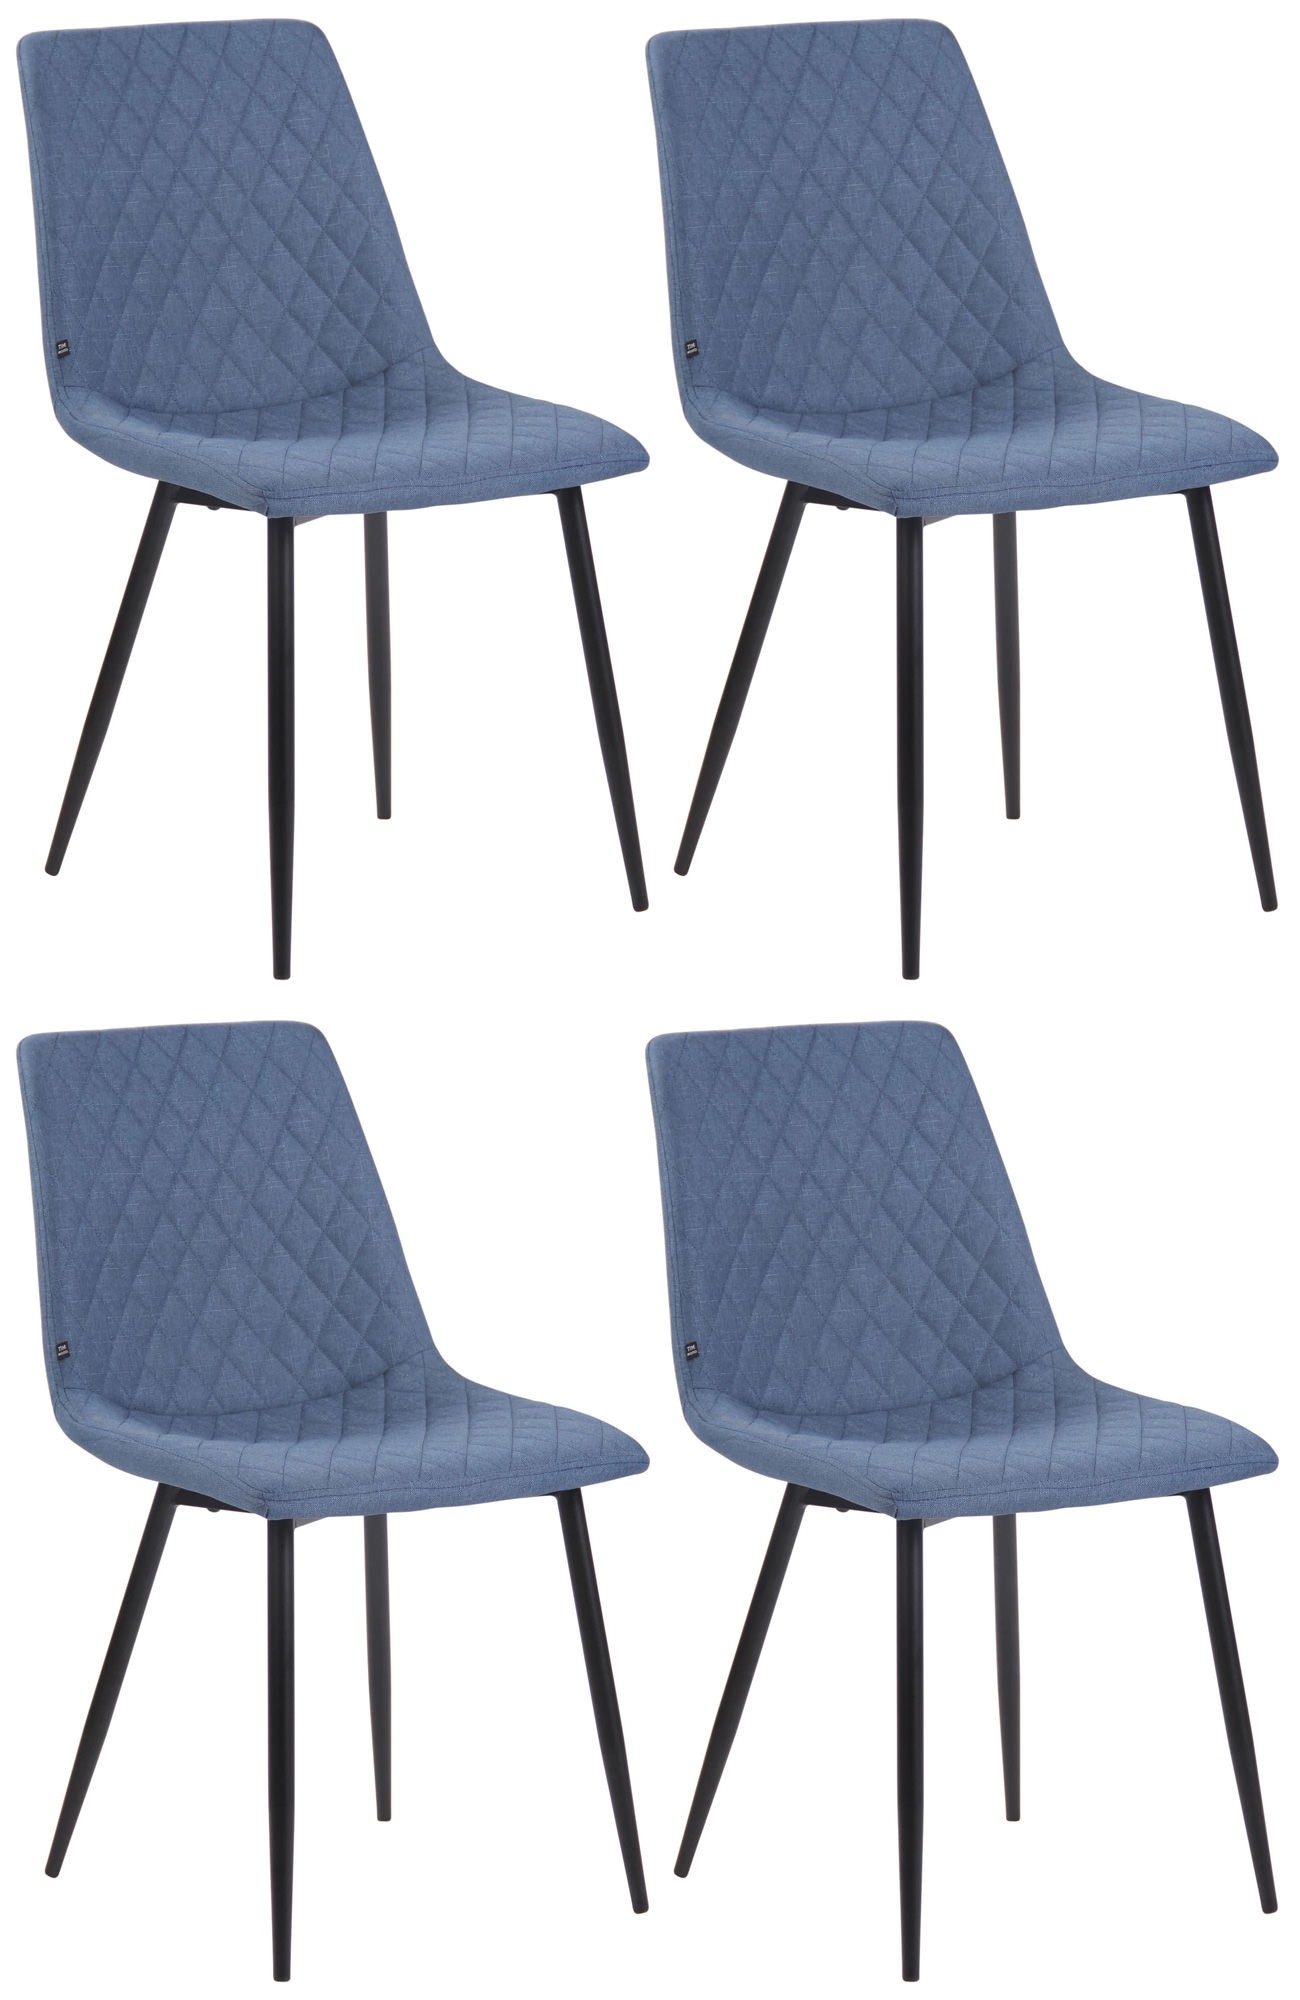 Juego de 4 sillas de comedor Telde tapizadas en tela